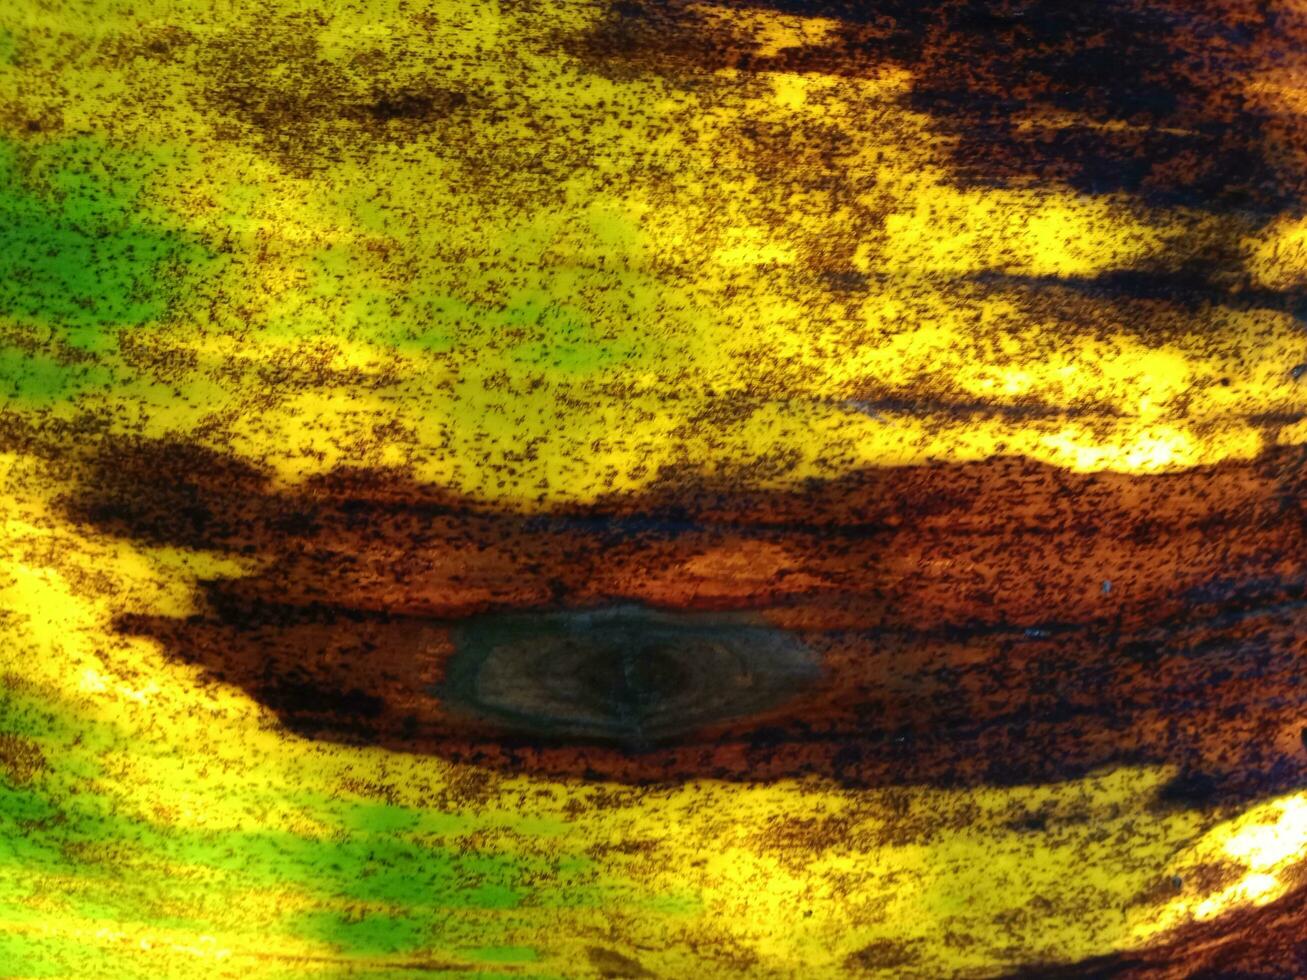 plátano hojas empezado a seco Fresco cuales son bonito con amarillo y marrón lugares. foto